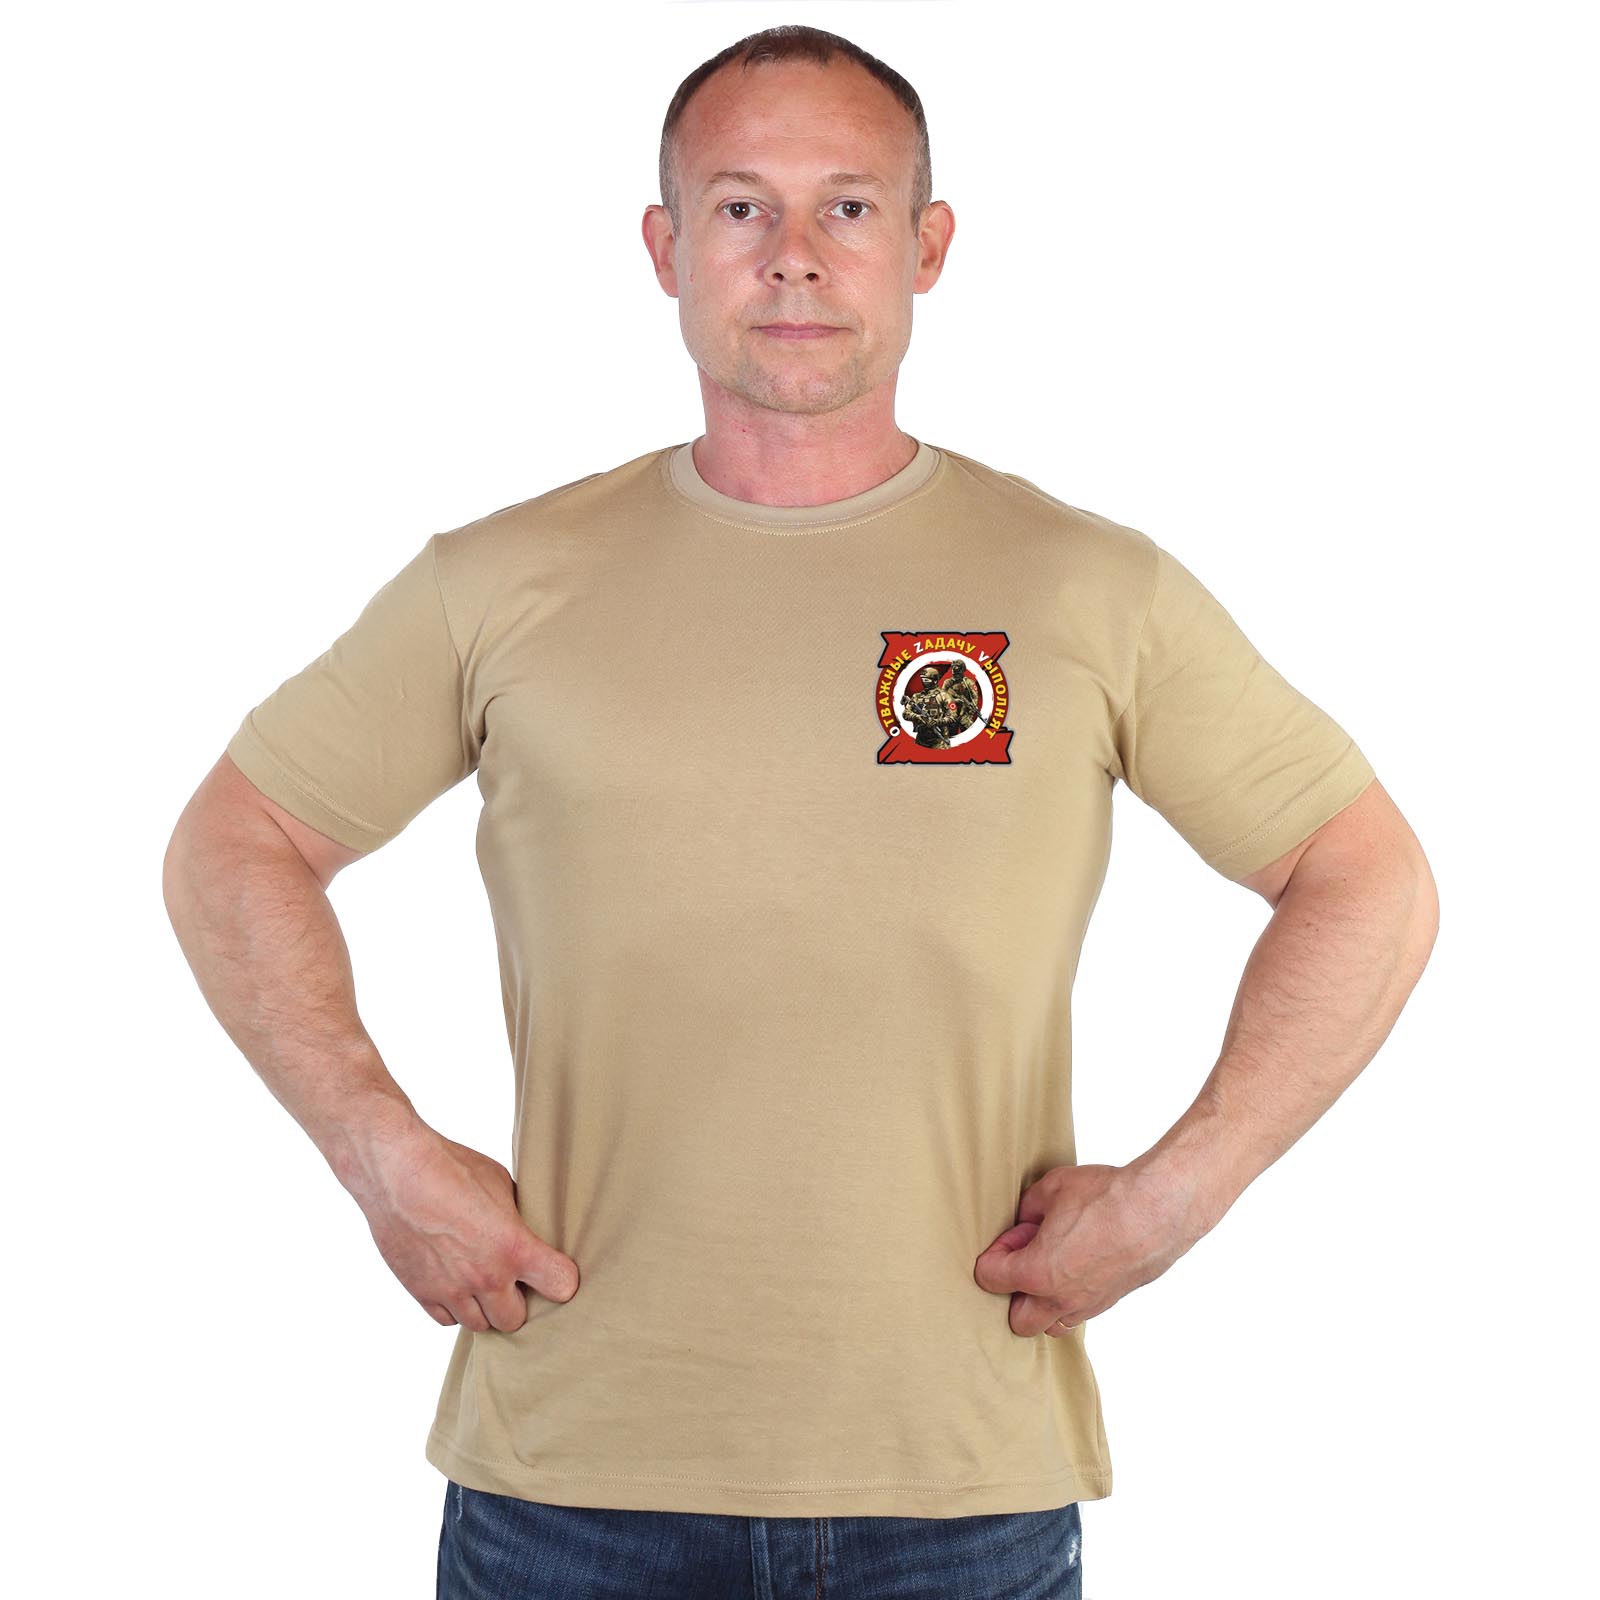 Песочная футболка с термопринтом "Отважные Zадачу Vыполнят"